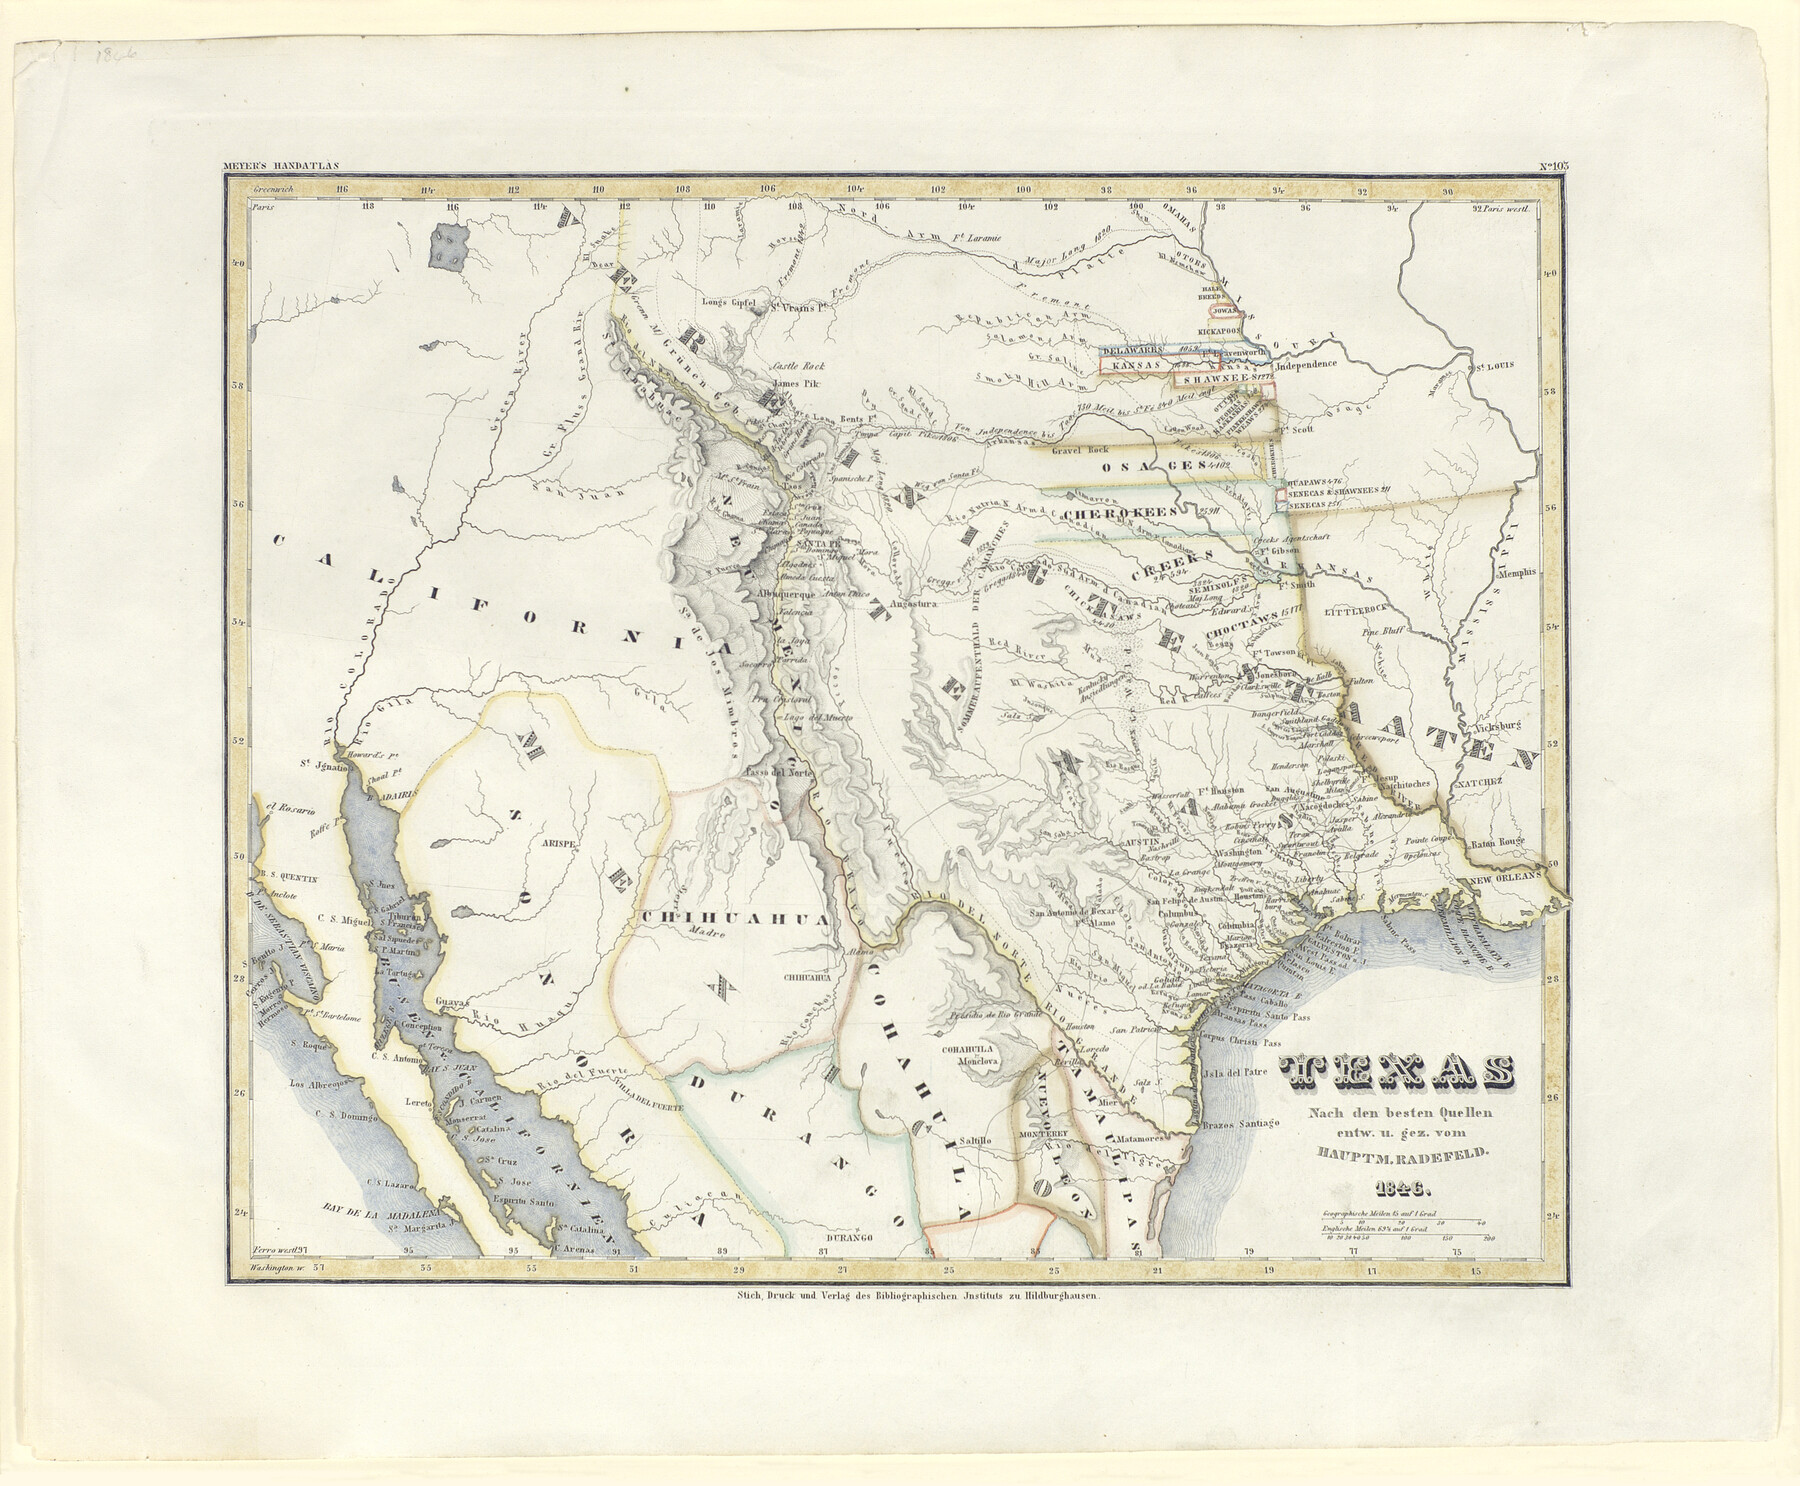 93874, Texas Nach den besten Quellen, Holcomb Digital Map Collection